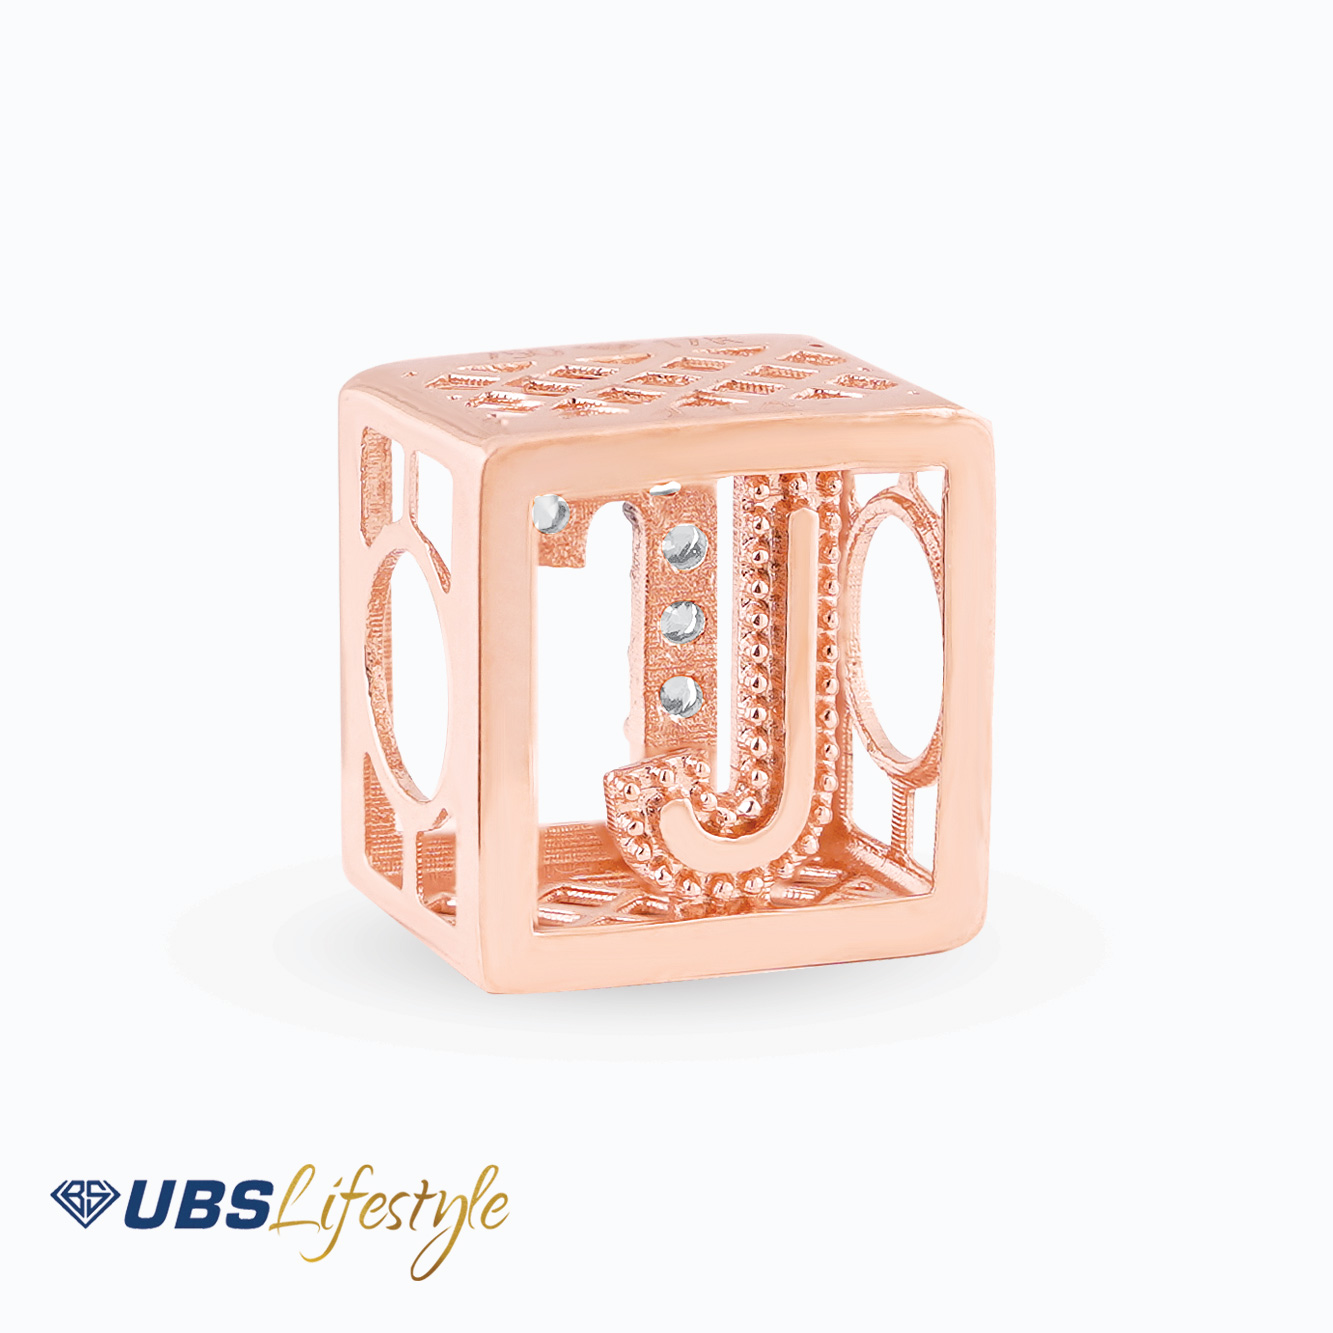 UBS Liontin Emas Carendelano Alpha Cube J - Cdm0149R - 17K